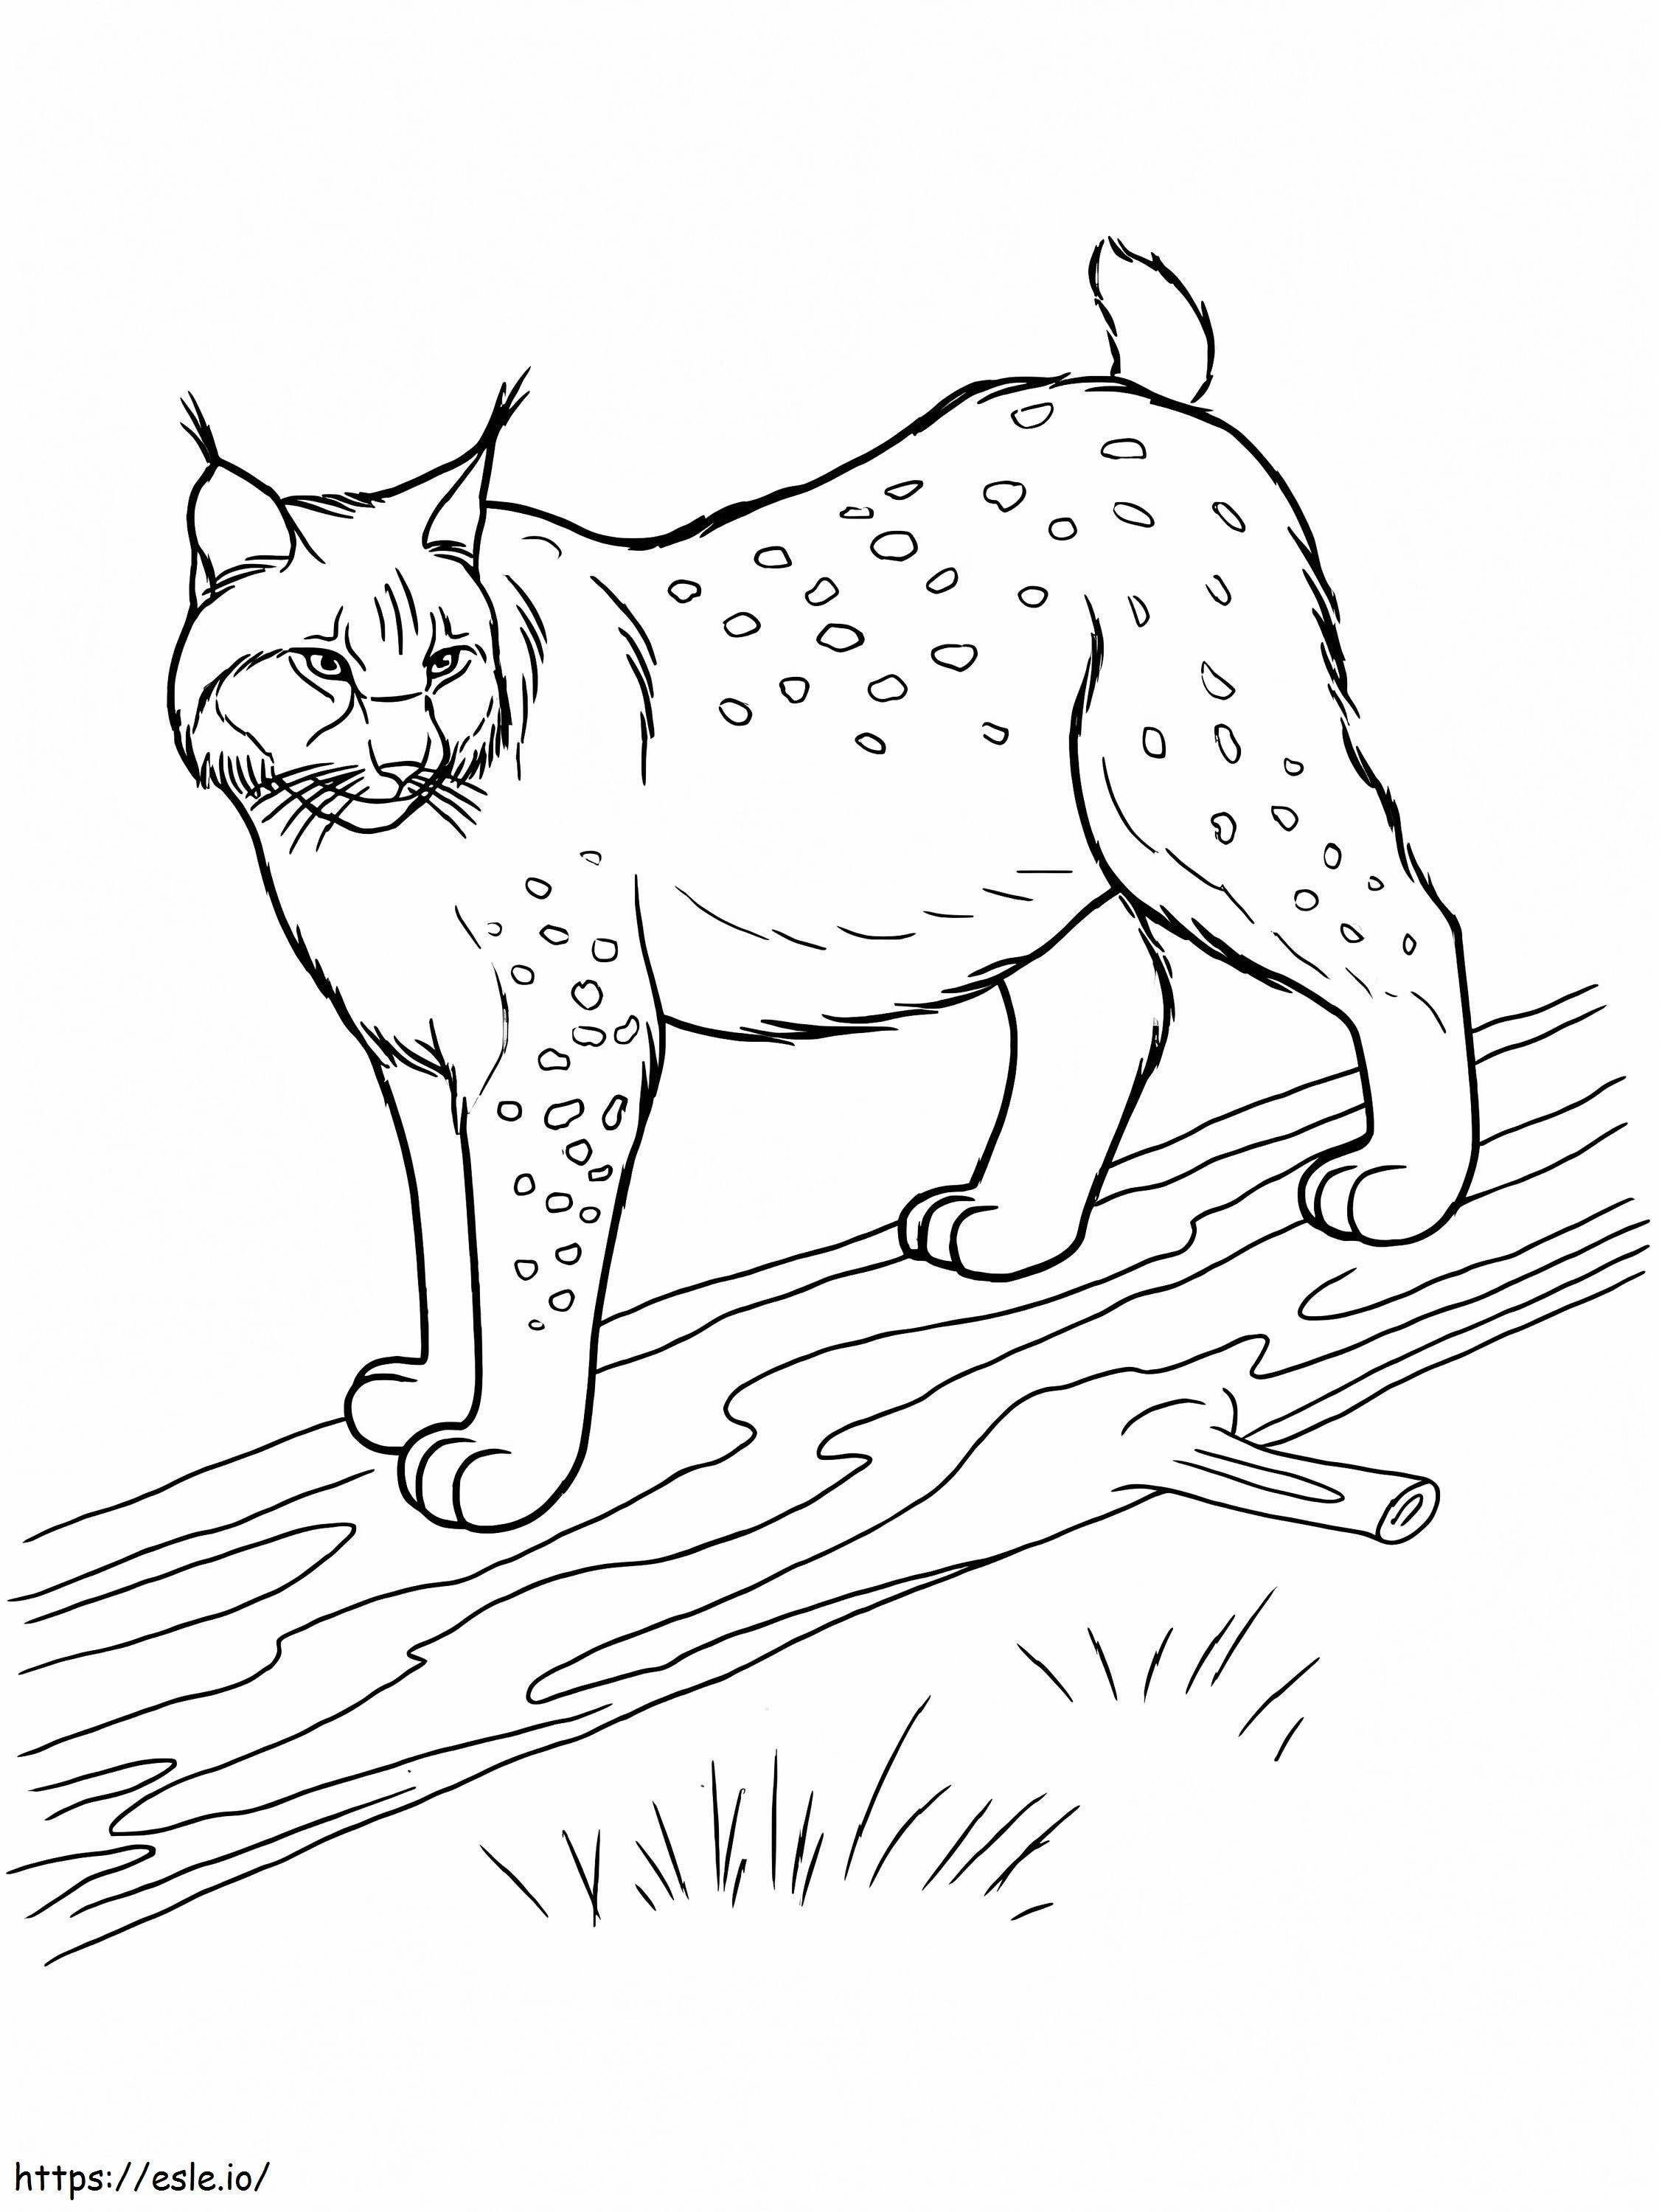 Coloriage Lynx debout sur un corps en bois à imprimer dessin